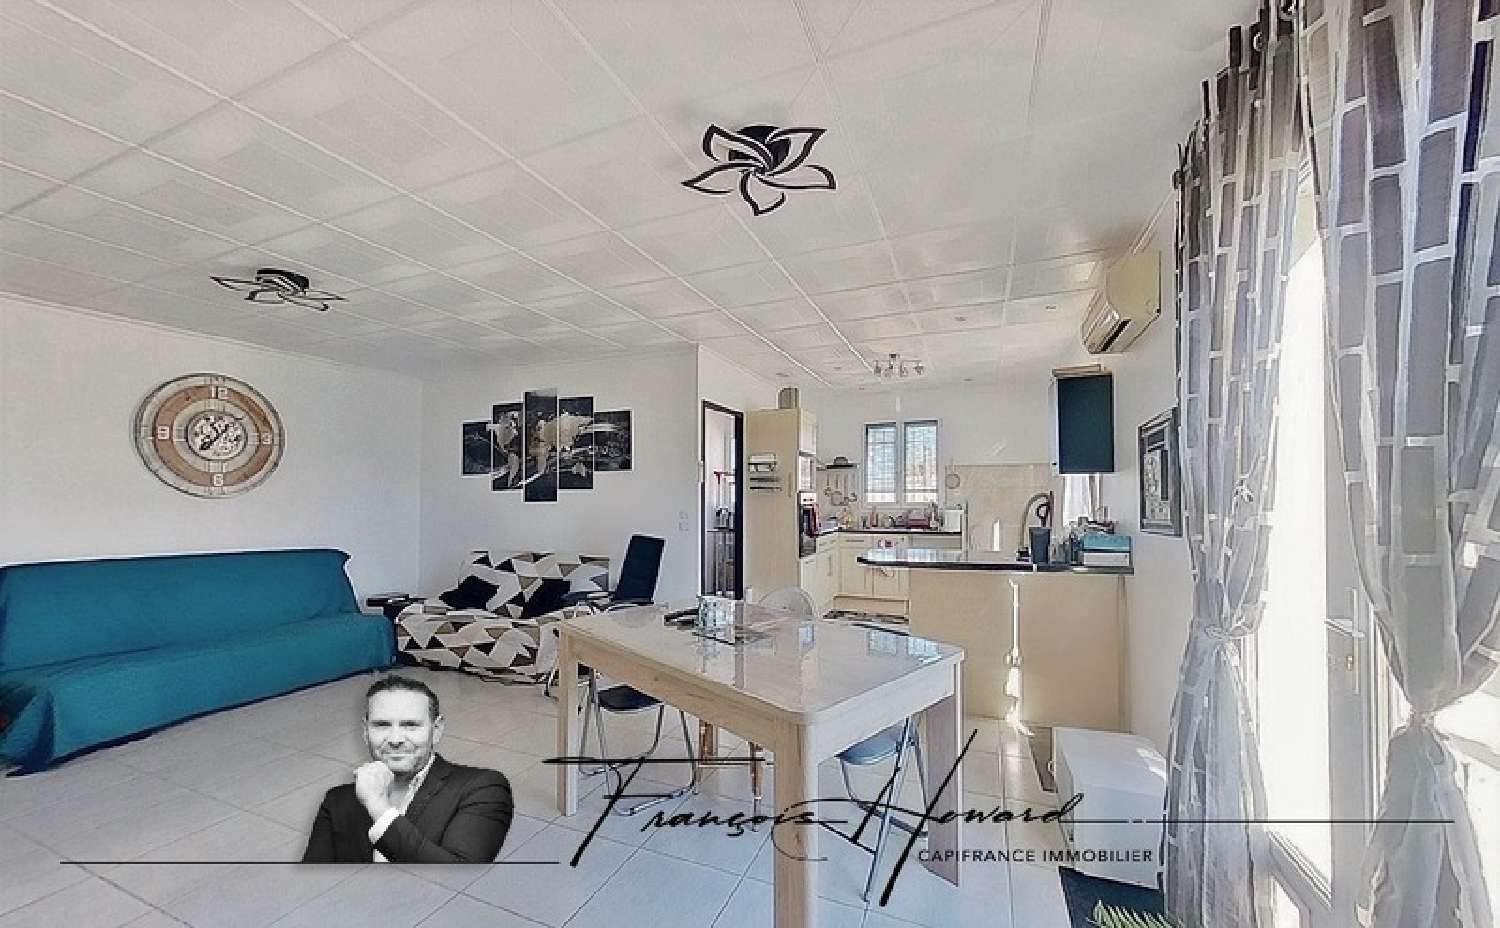  à vendre appartement Villelongue-dels-Monts Pyrénées-Orientales 1